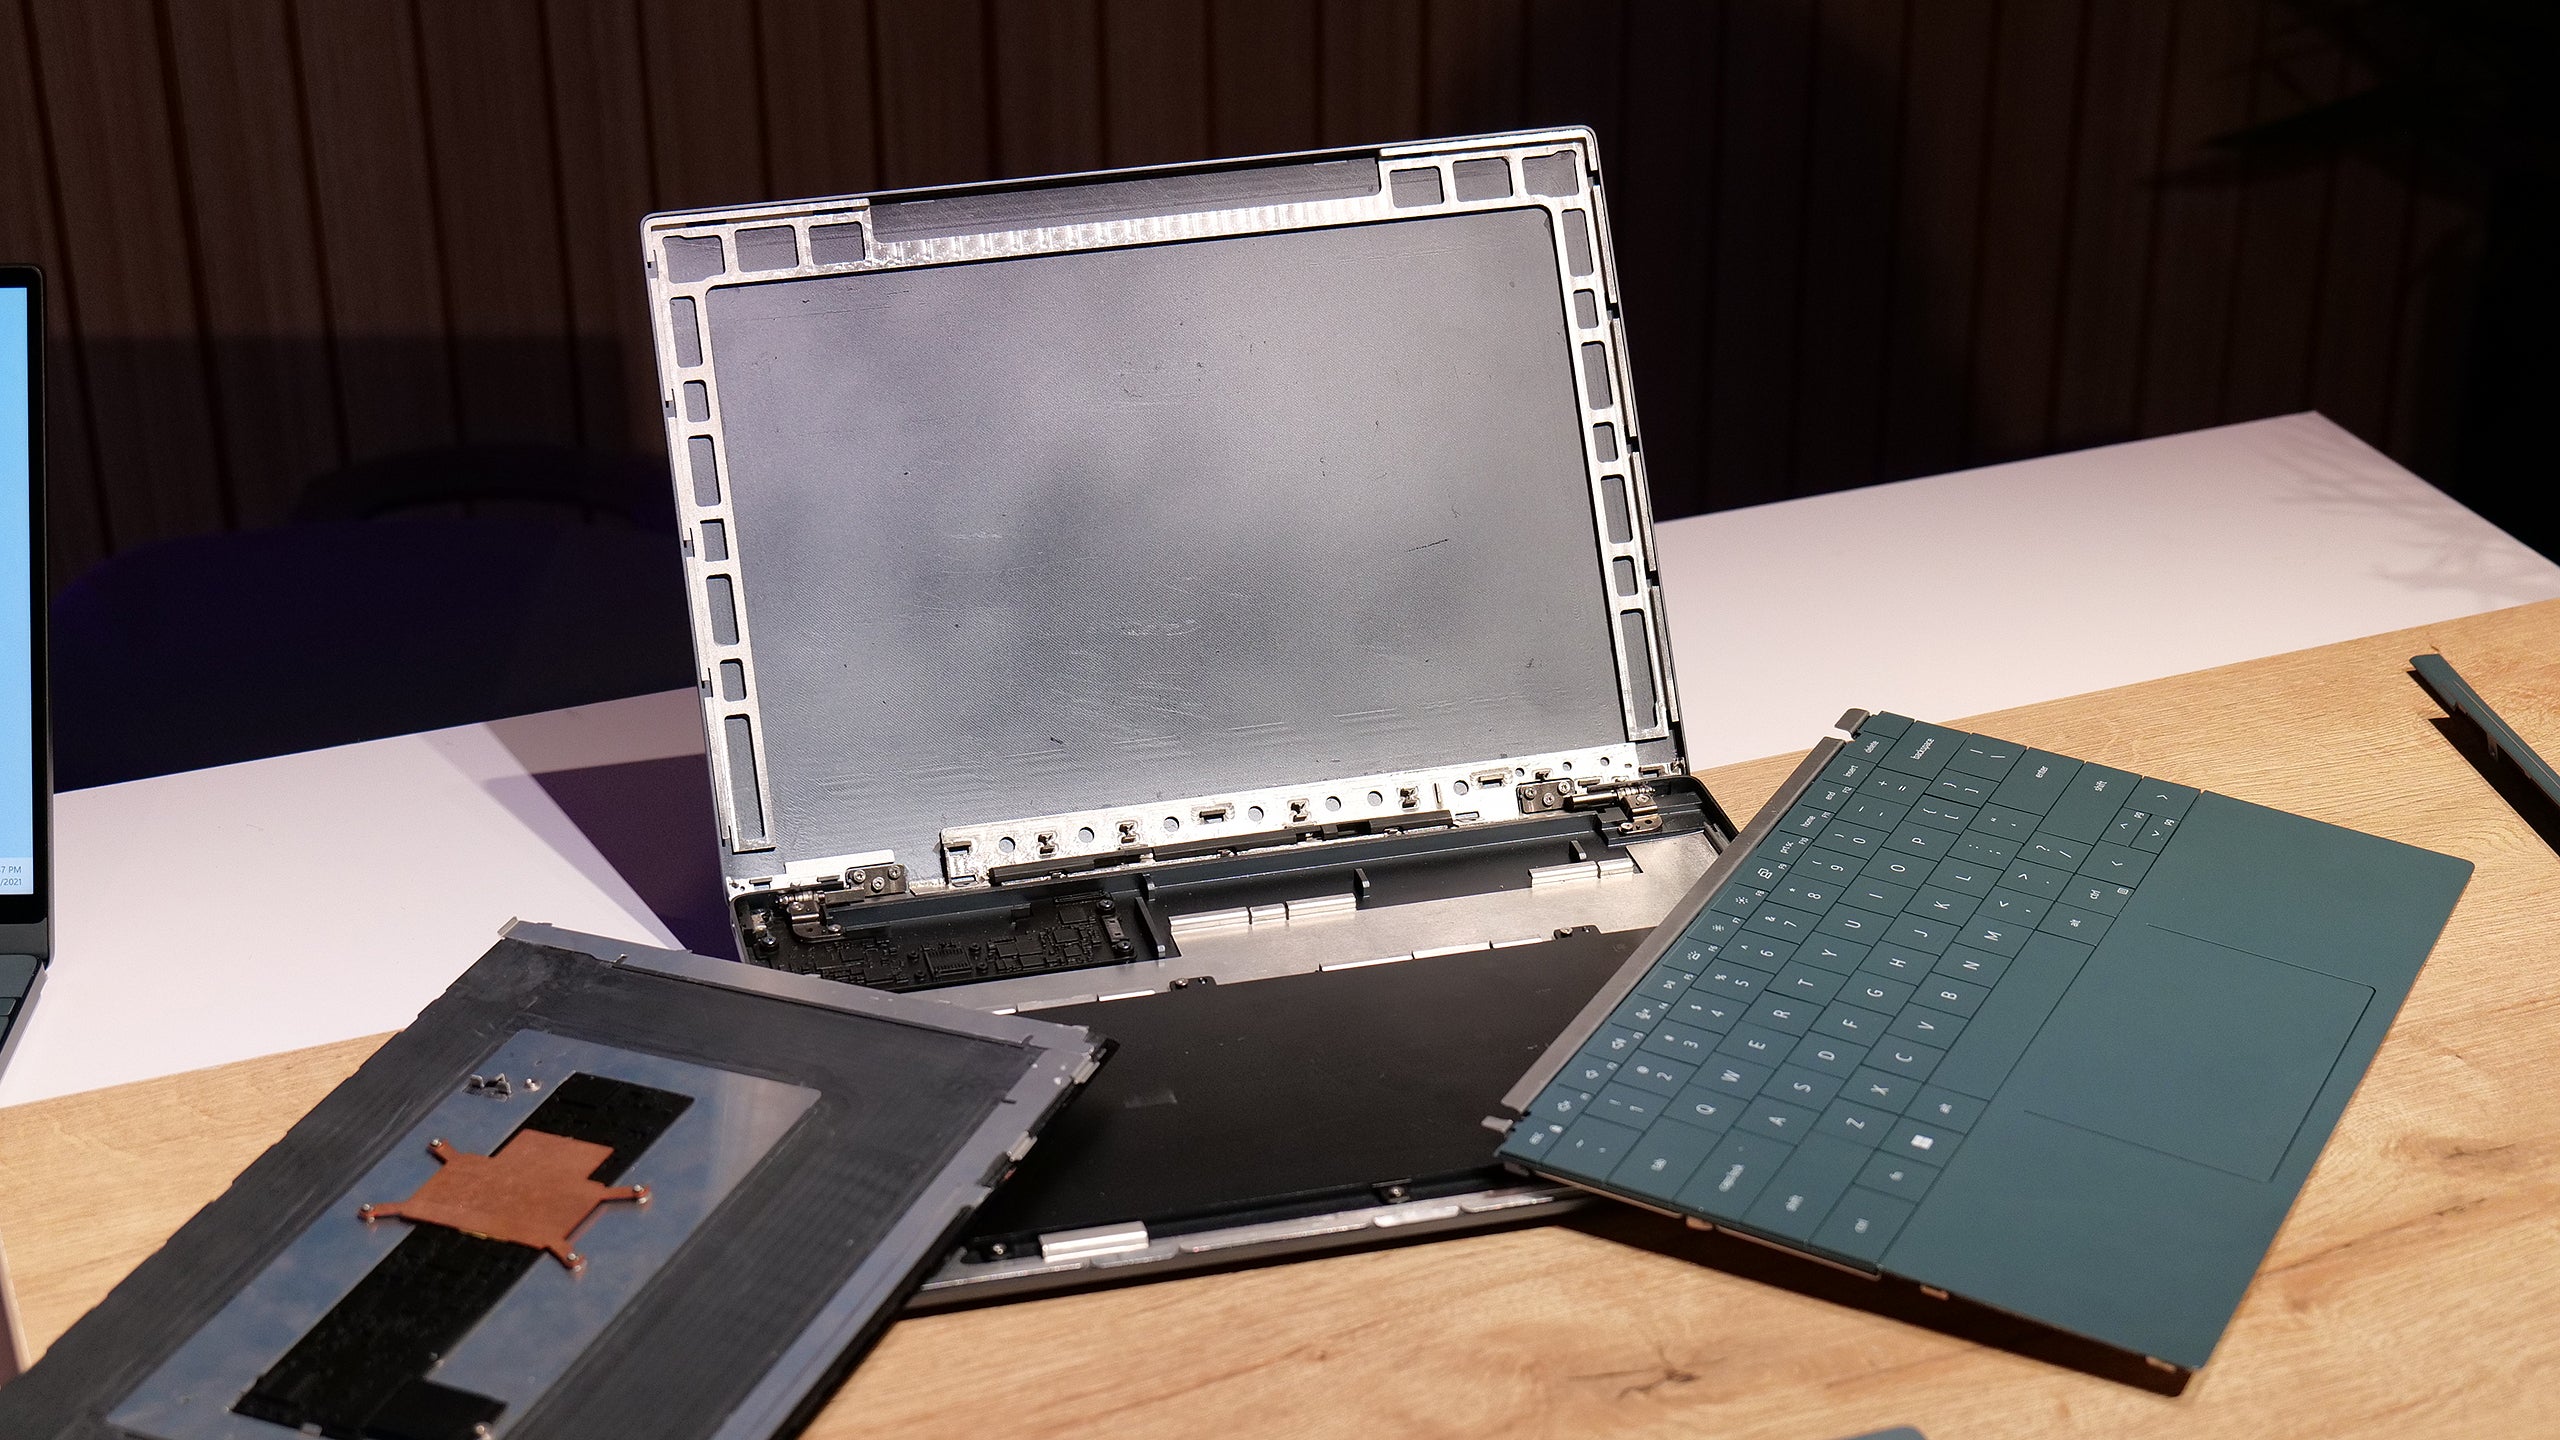 Το Concept Luna της Dell μας δίνει μια άποψη στον μελλοντικό σχεδιασμό των Laptop